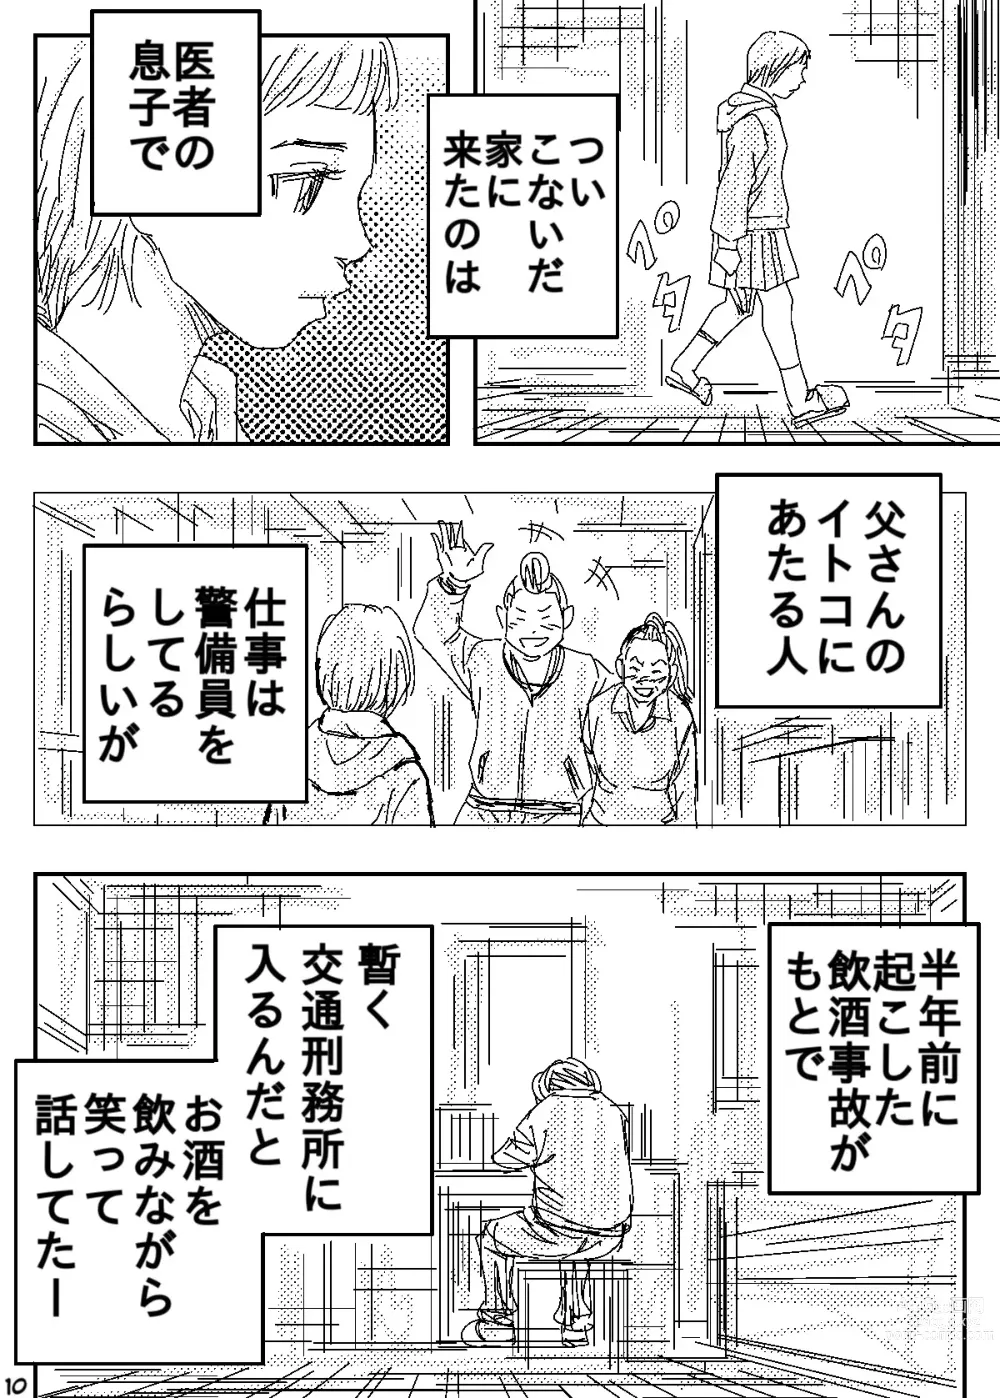 Page 10 of doujinshi Gesu no Kiwami Kazoku